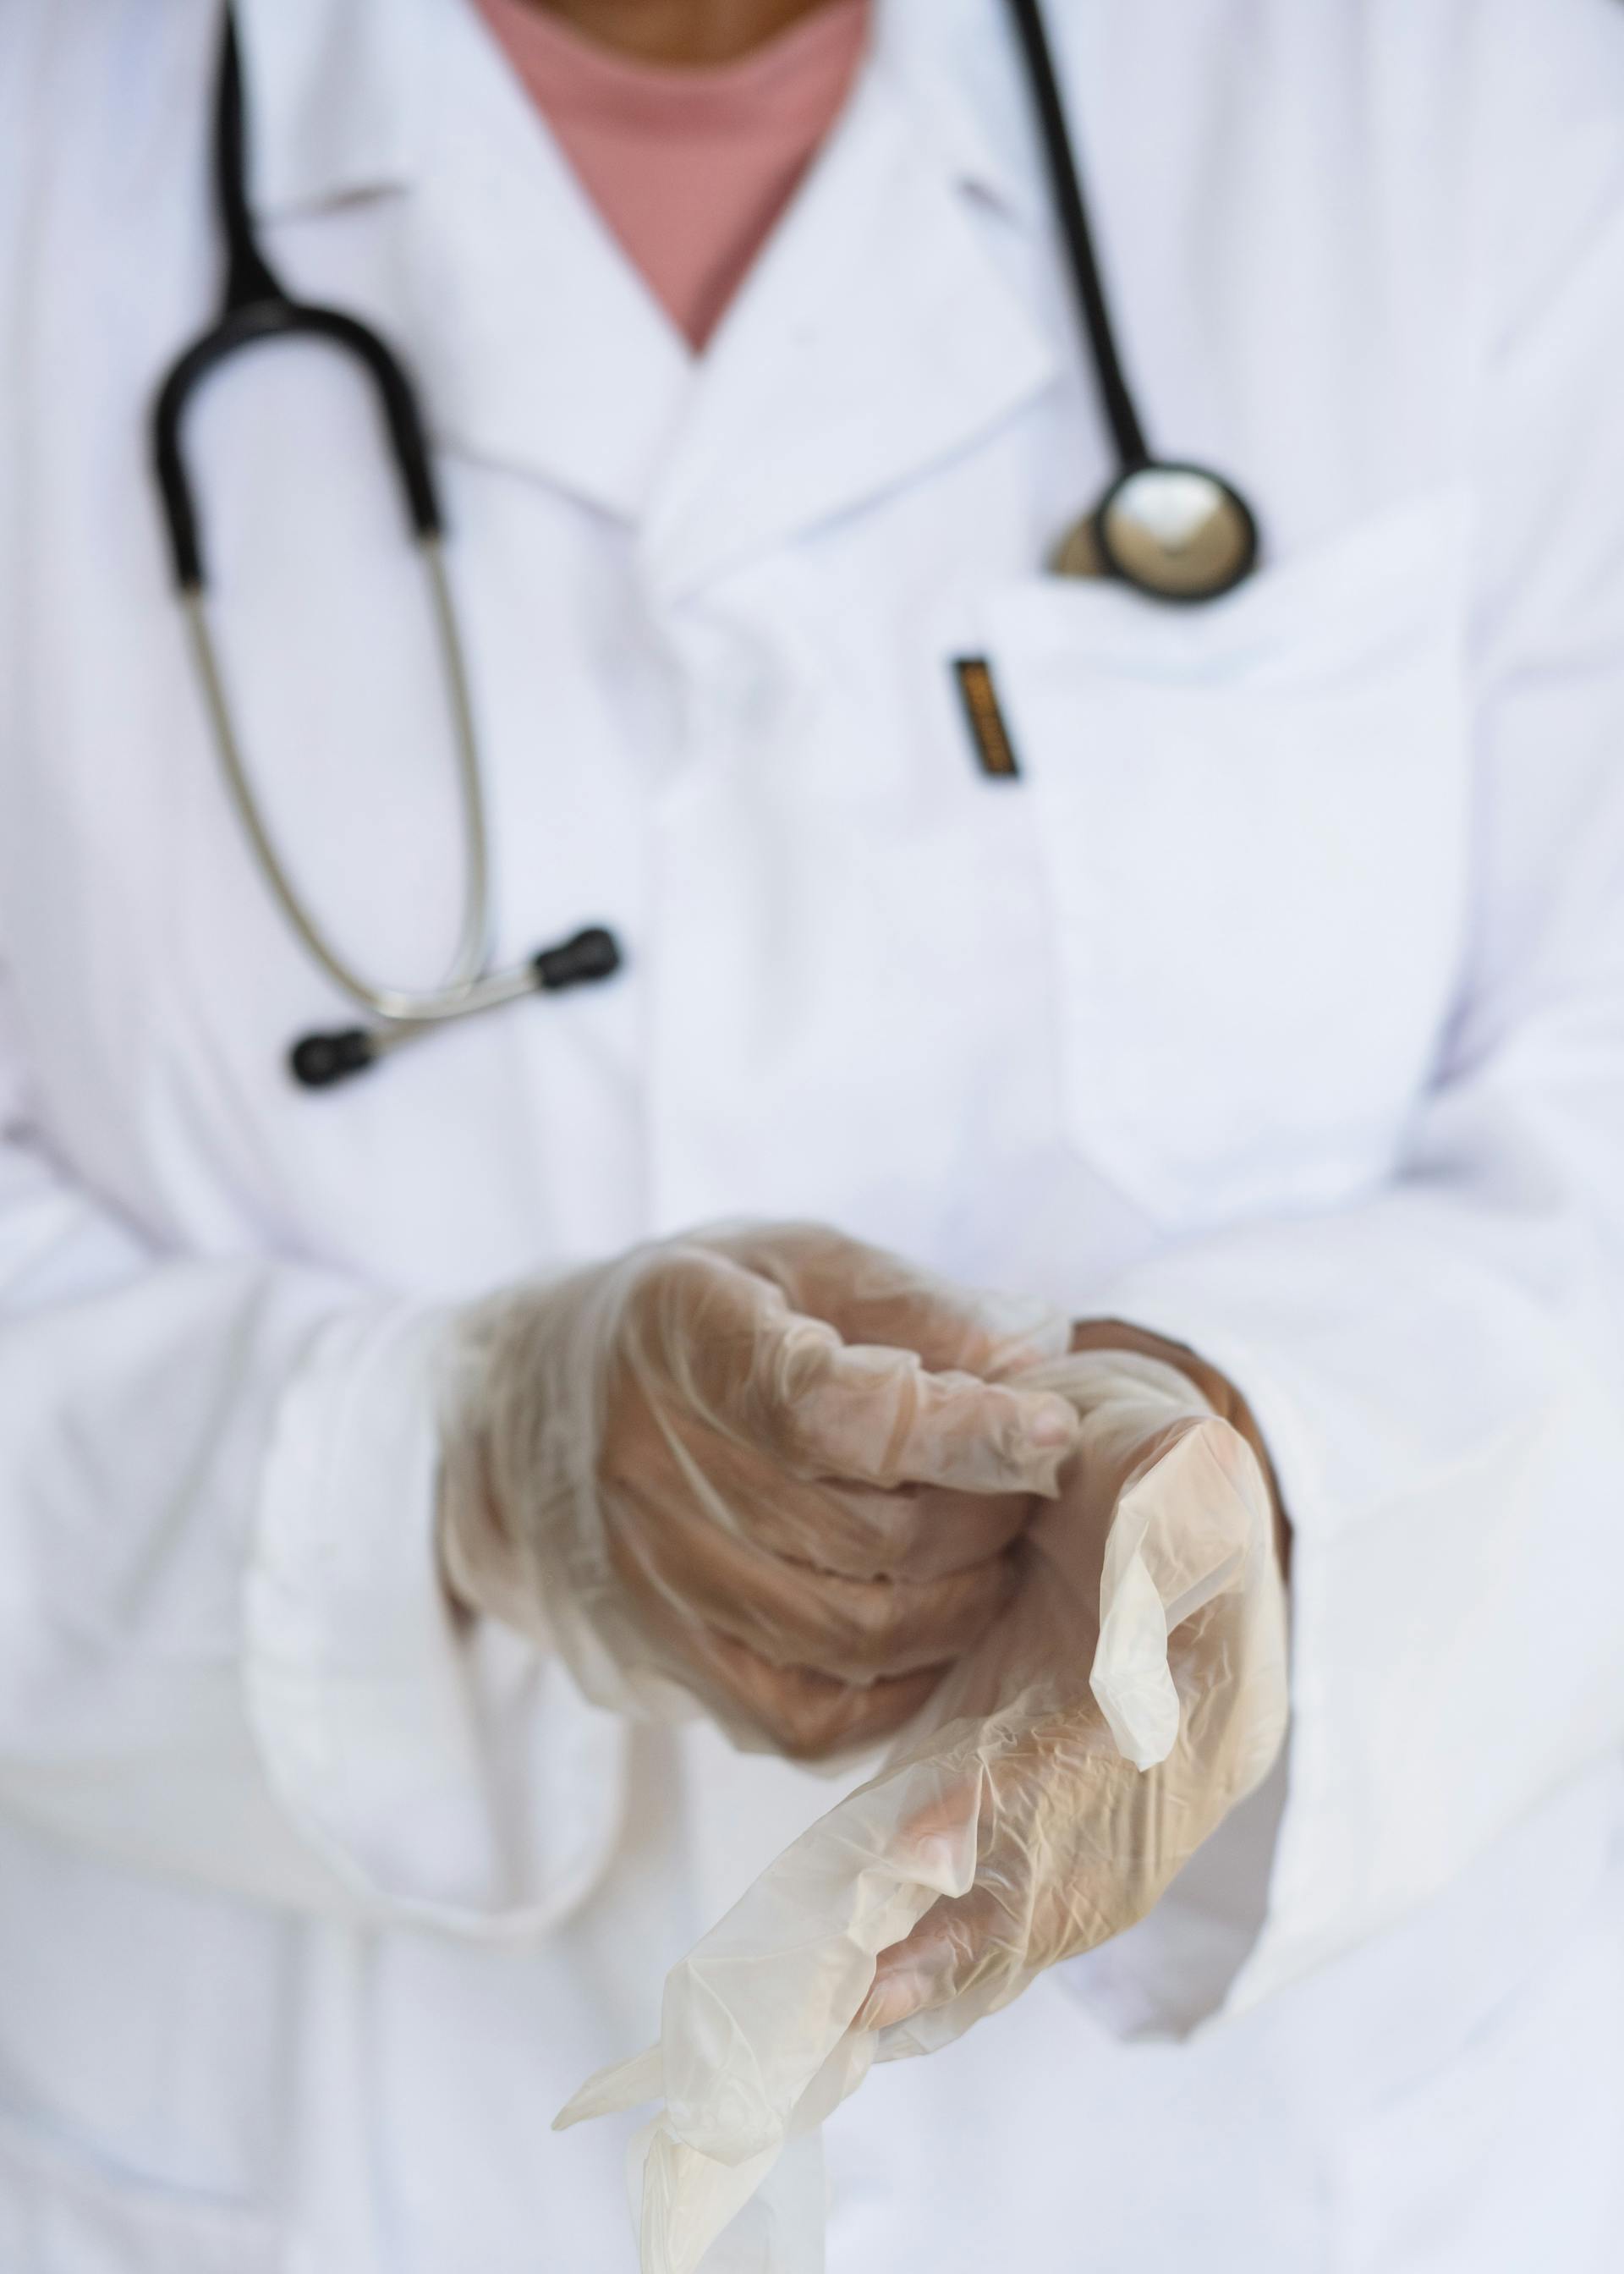 Un médecin enfile des gants | Source : Pexels